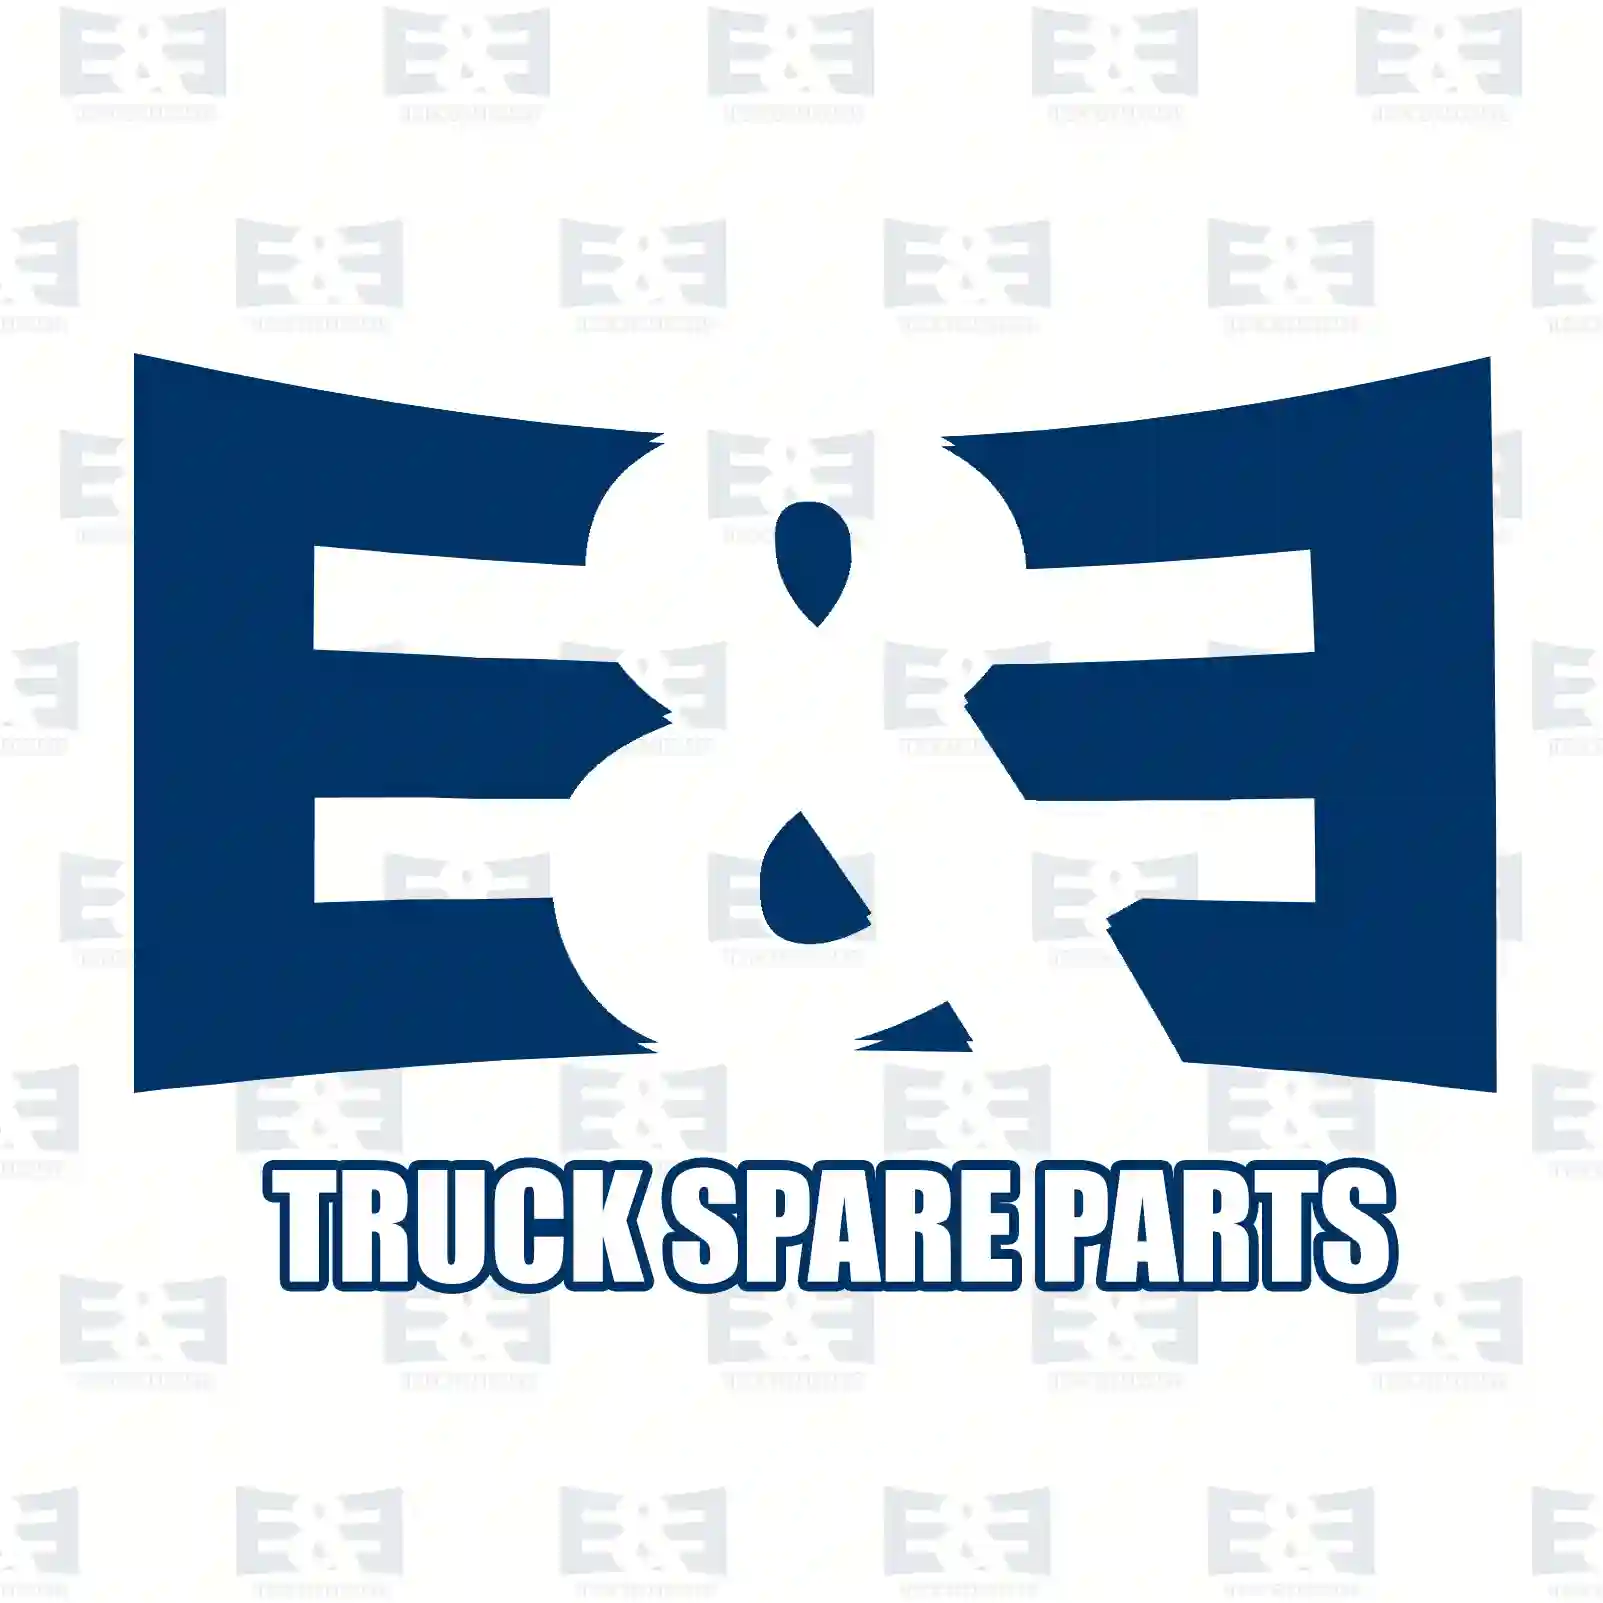 Brake disc, 2E2296335, 6384210112, , , , , , , , , ||  2E2296335 E&E Truck Spare Parts | Truck Spare Parts, Auotomotive Spare Parts Brake disc, 2E2296335, 6384210112, , , , , , , , , ||  2E2296335 E&E Truck Spare Parts | Truck Spare Parts, Auotomotive Spare Parts